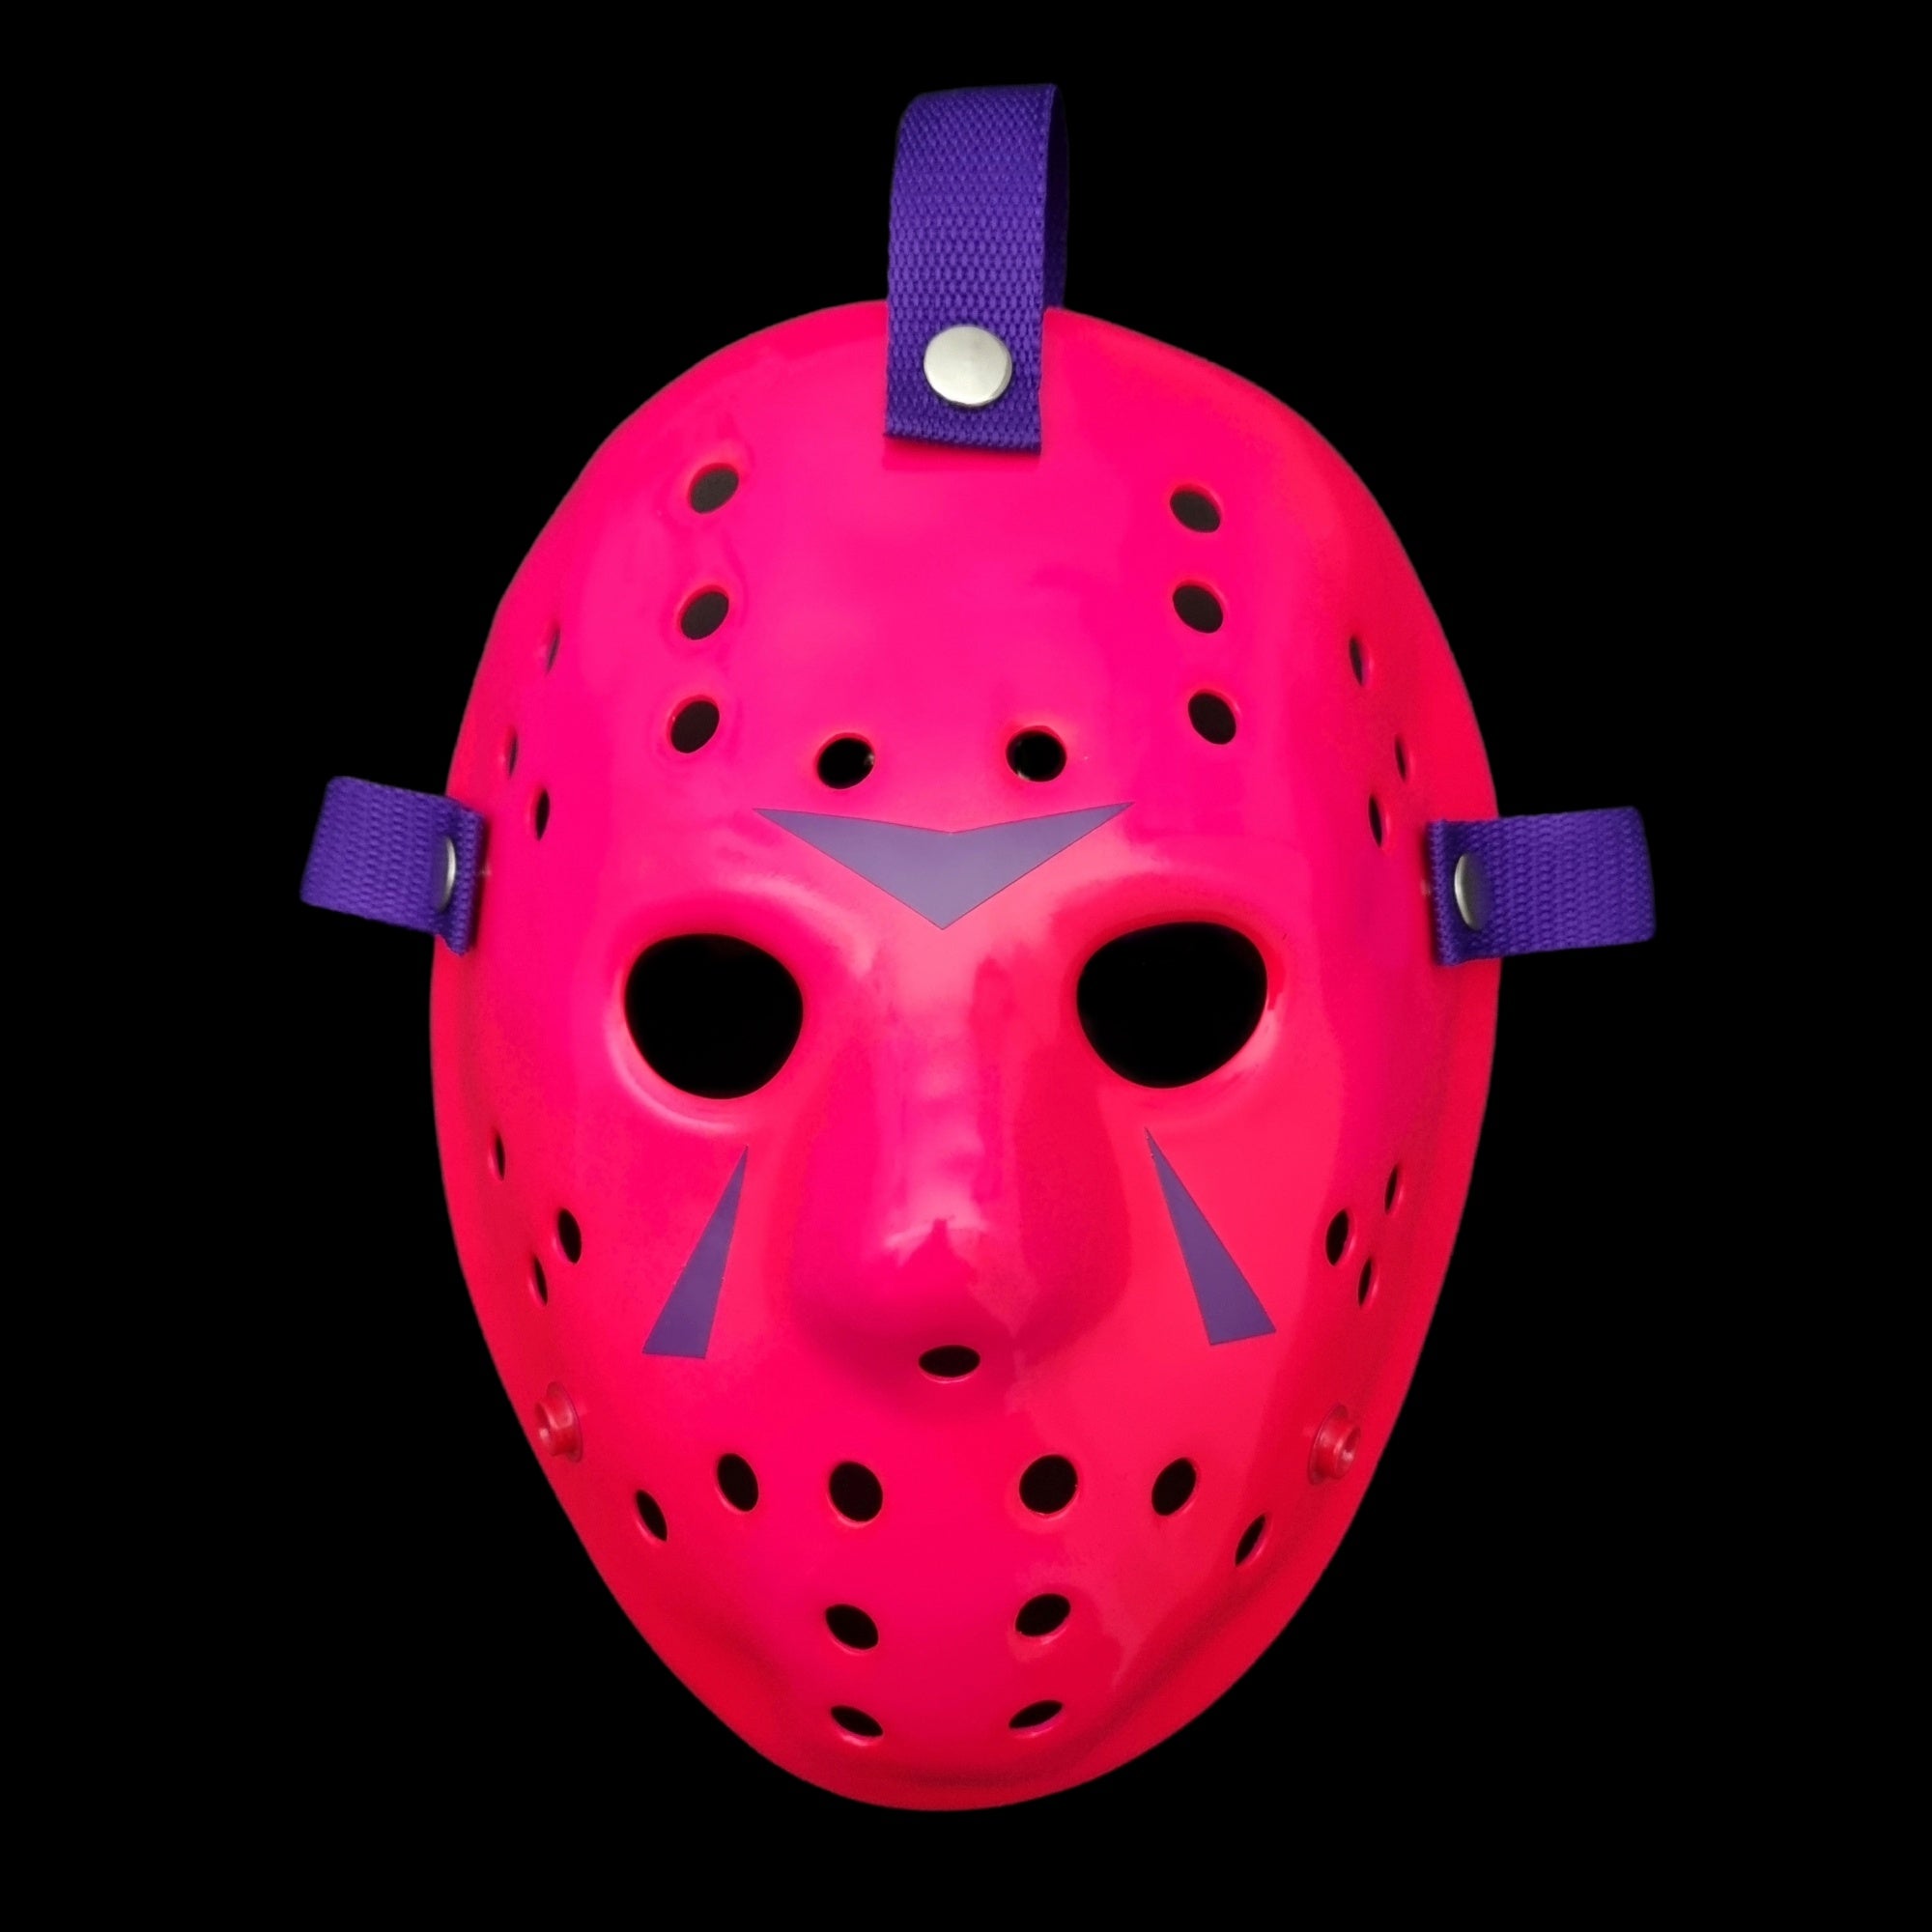 gucci jason mask - Google Search  Mouth mask fashion, Mask, Jason